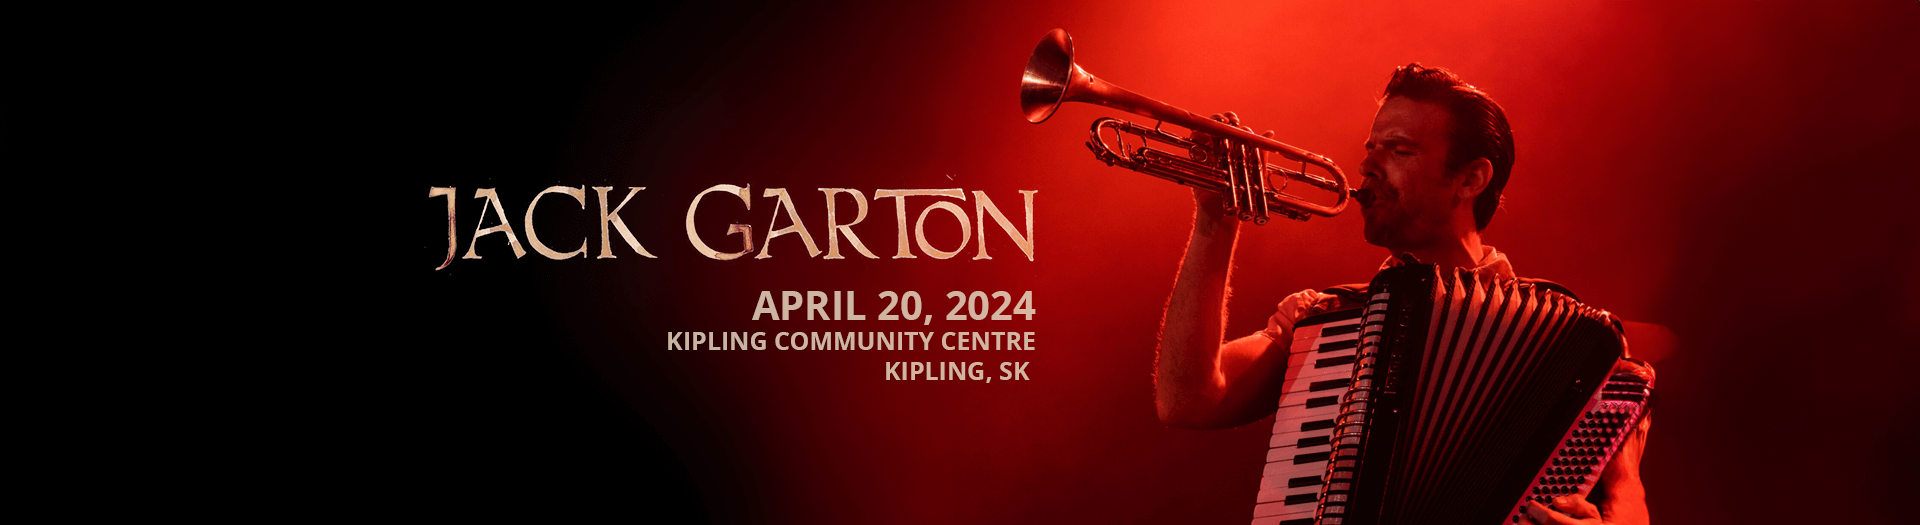 Jack Garton, Kipling Community Centre, SK